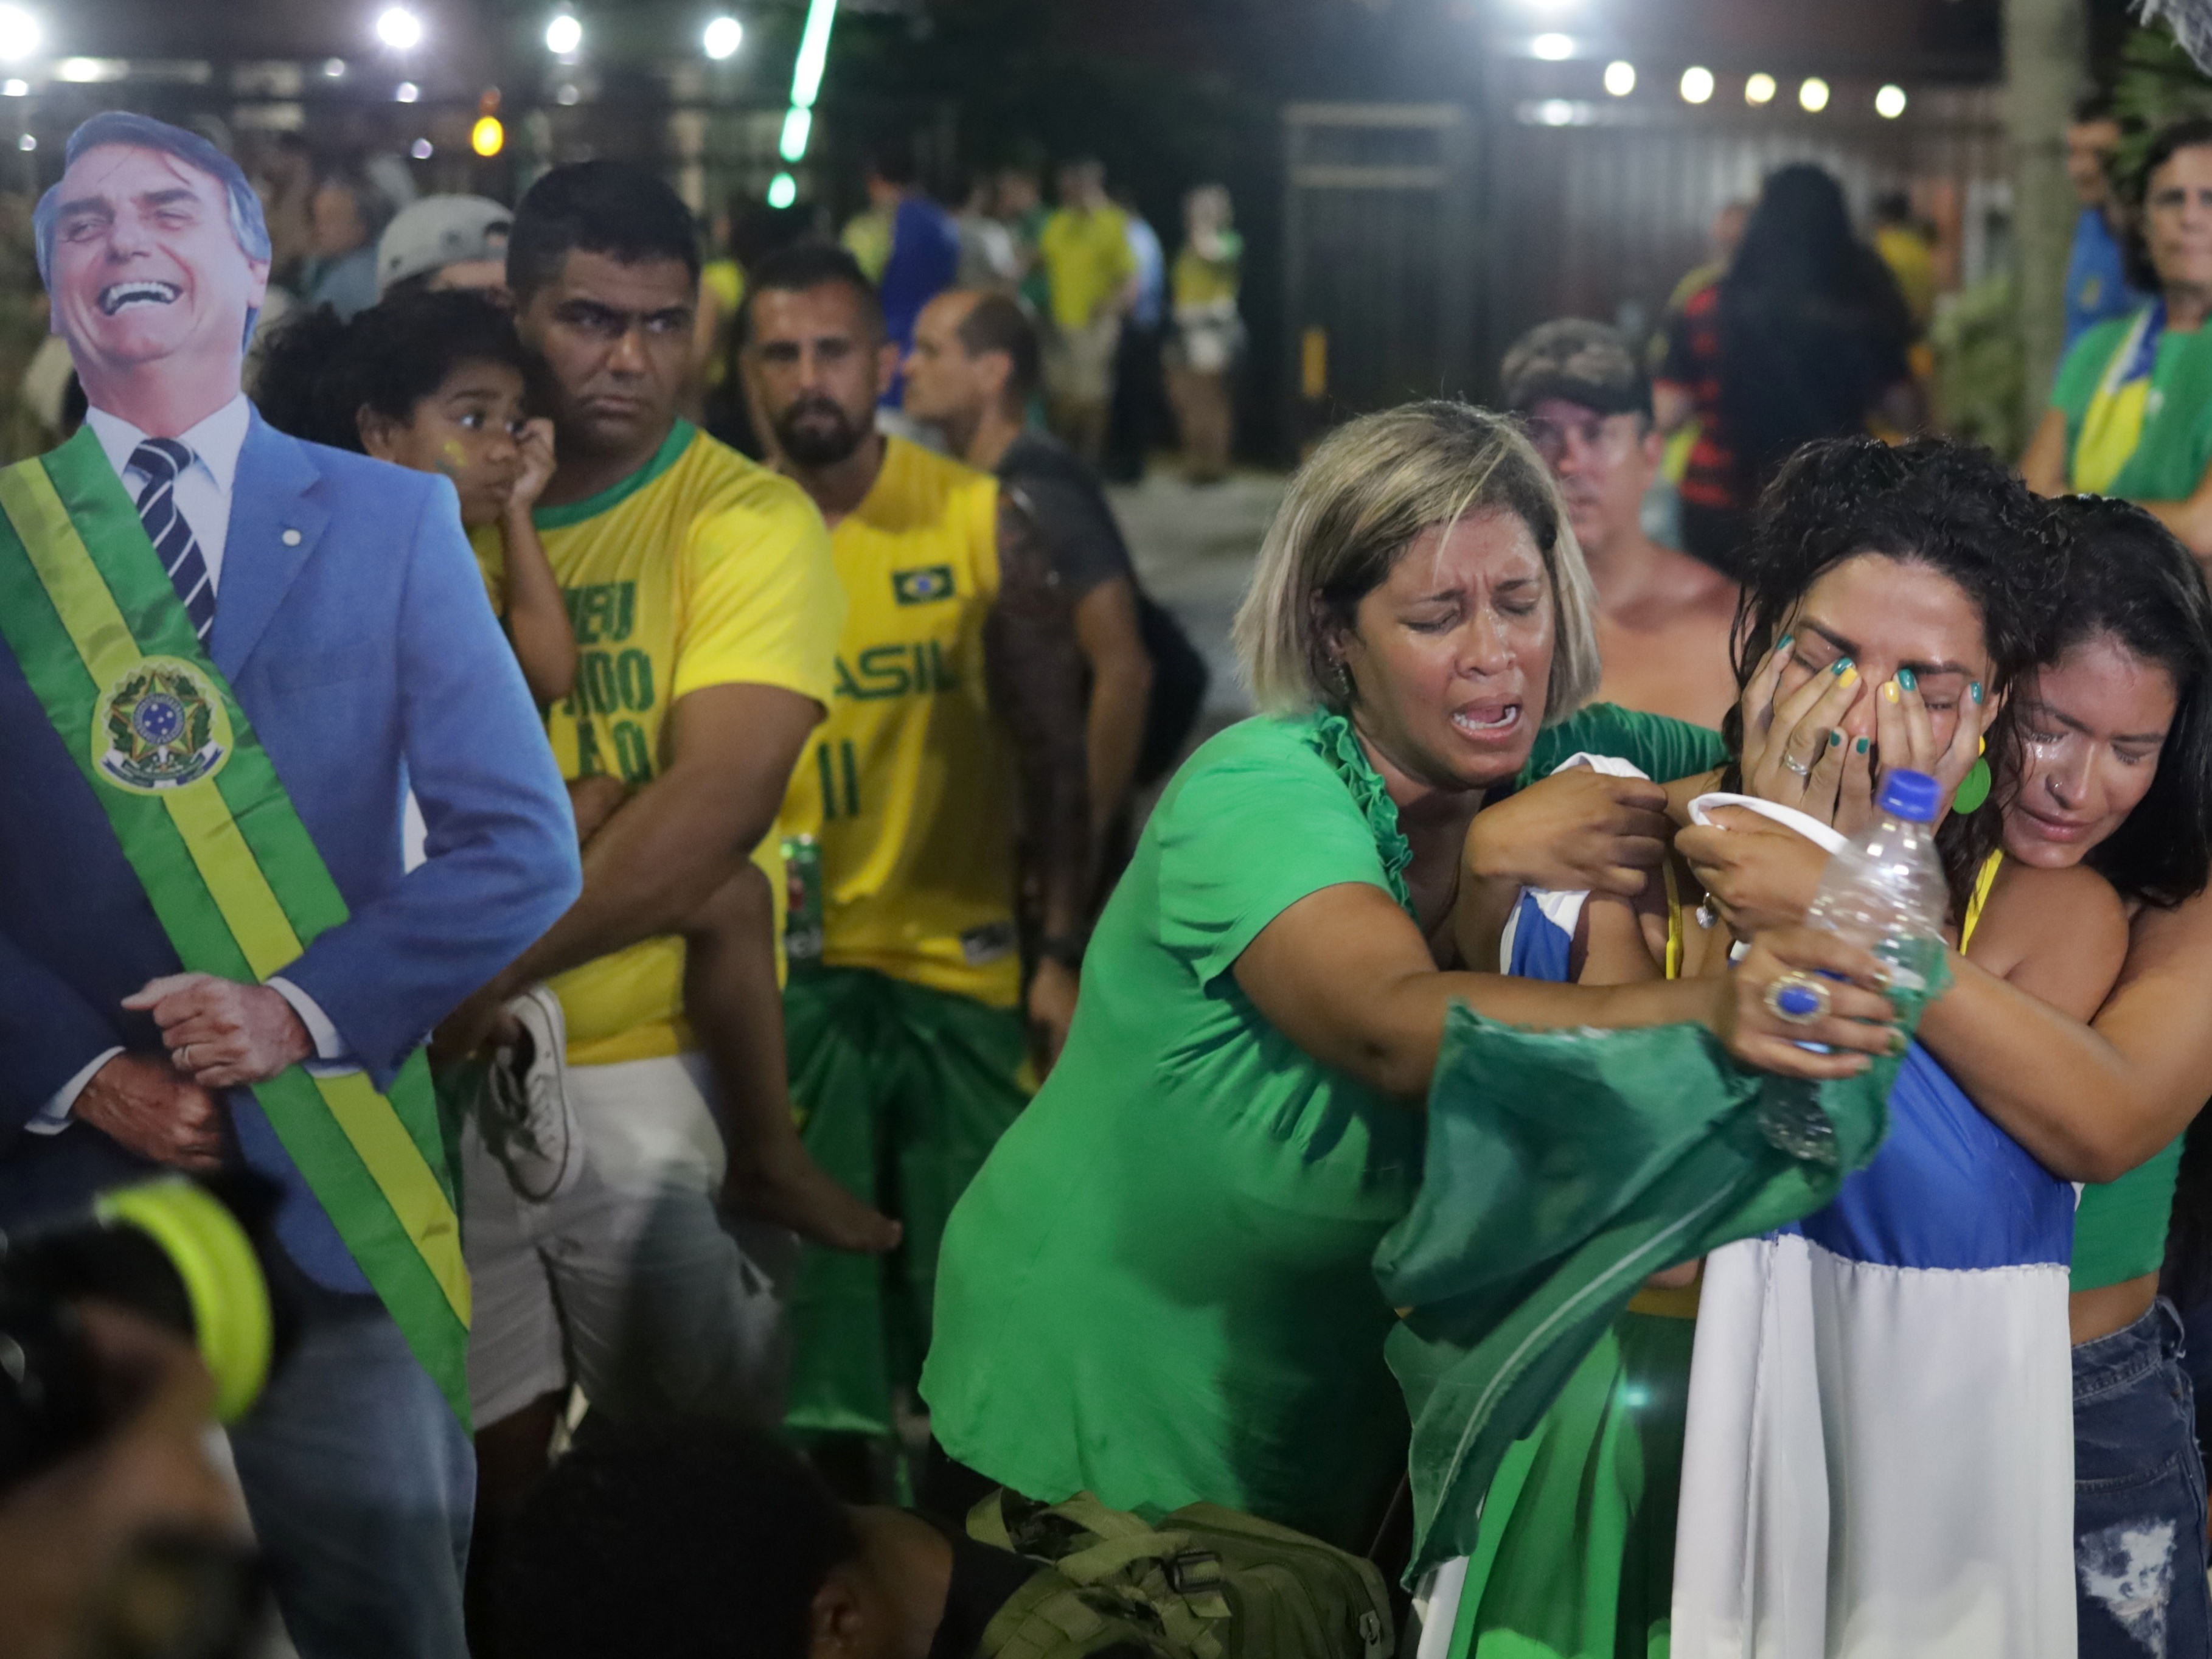 Rio de Janeiro não tem como barrar bolsonarismo - 28/09/2022